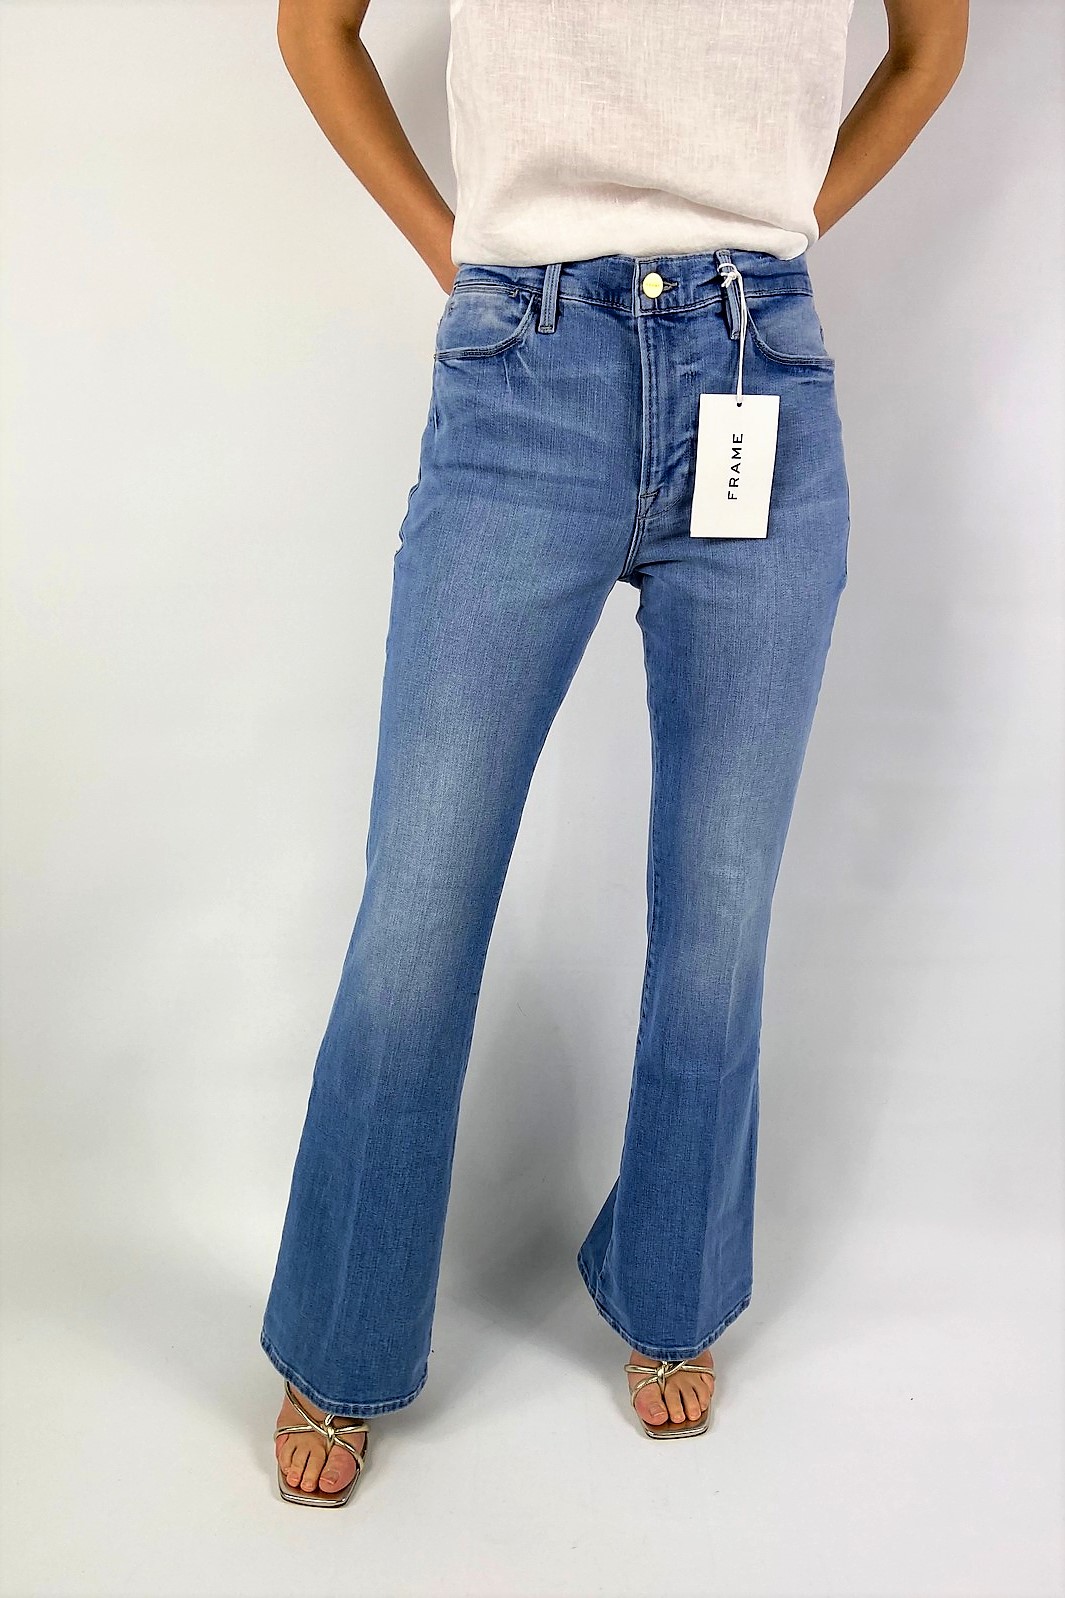 Jeans skinny in de kleur lichtblauw van het merk Frame